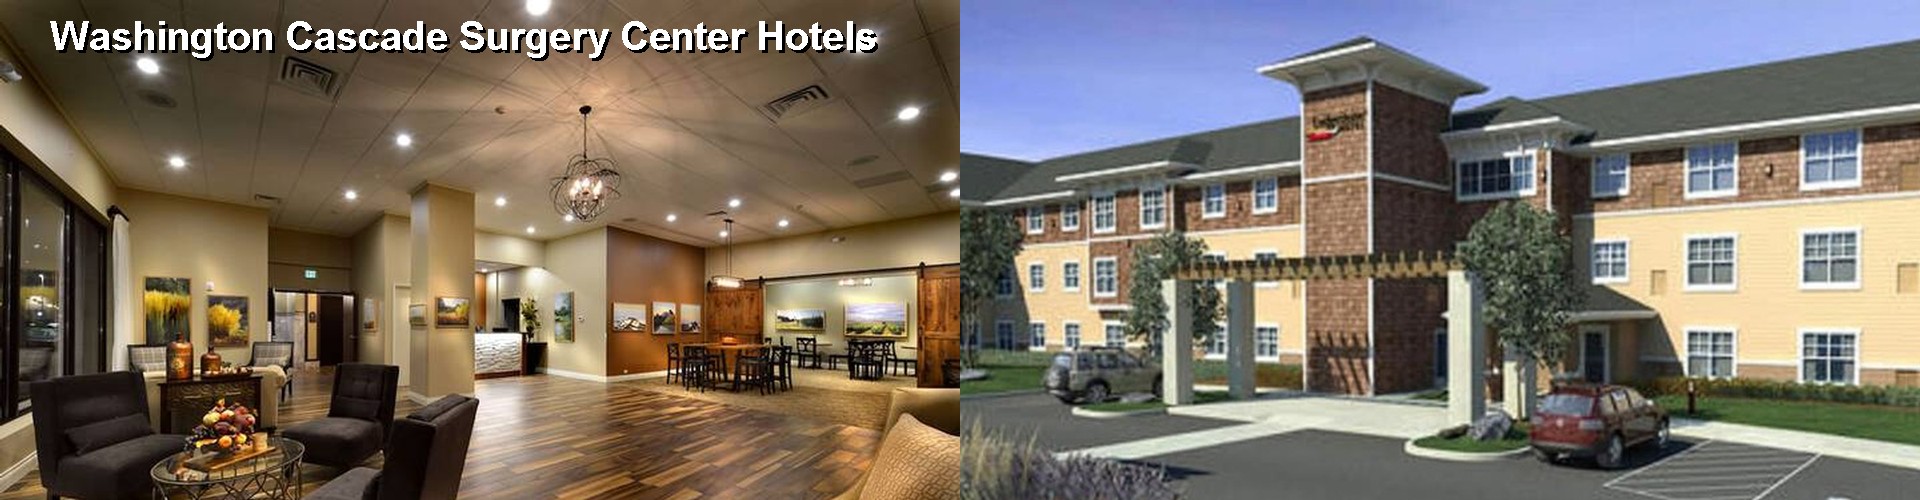 5 Best Hotels near Washington Cascade Surgery Center